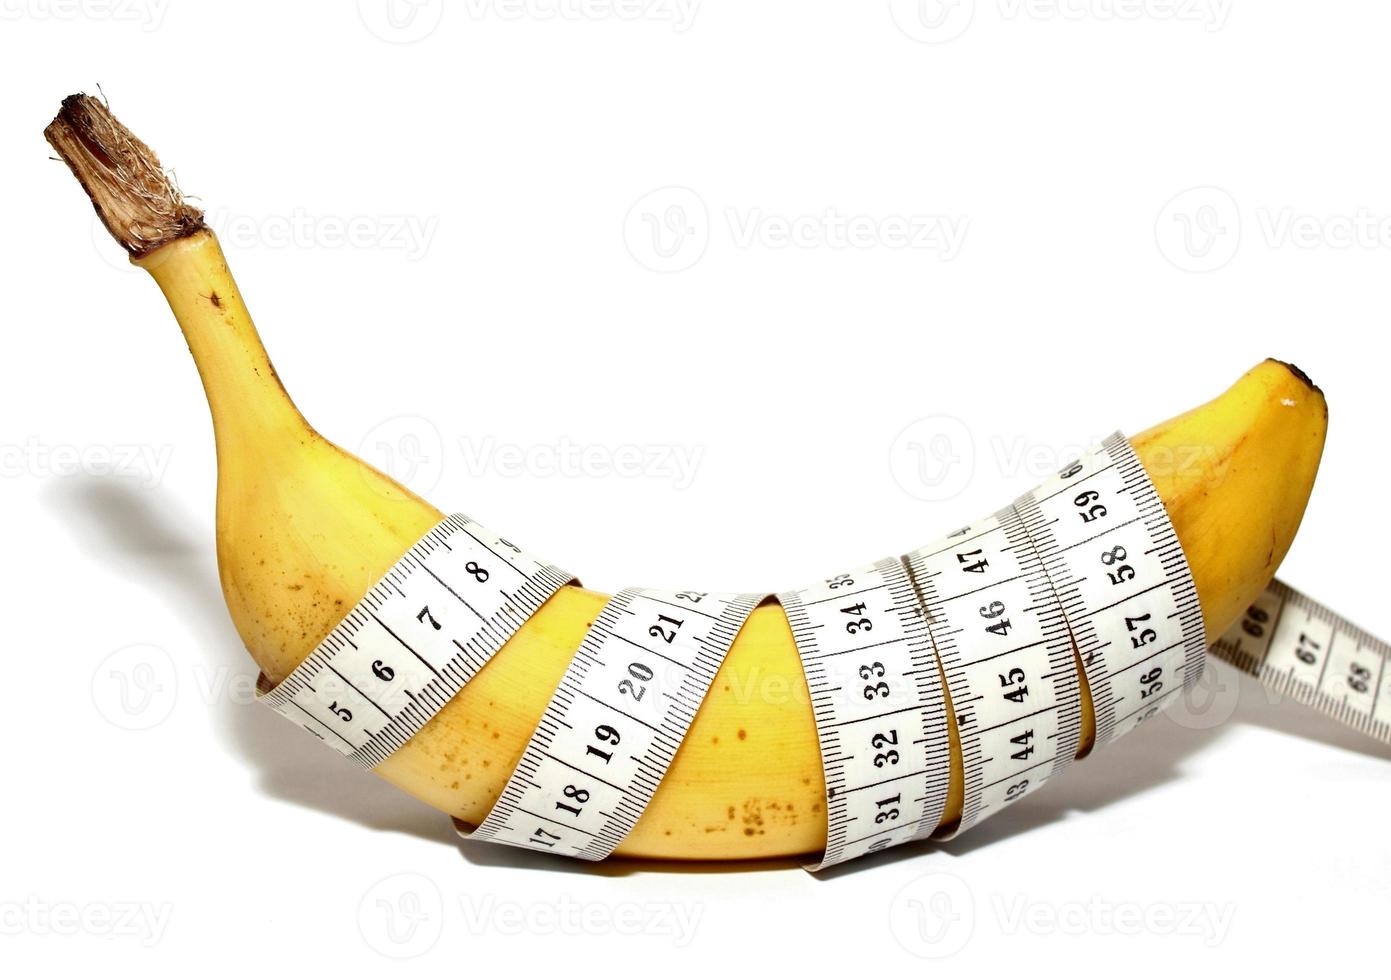 grote banaan, zoals de grote penis van de mens, groot formaat foto